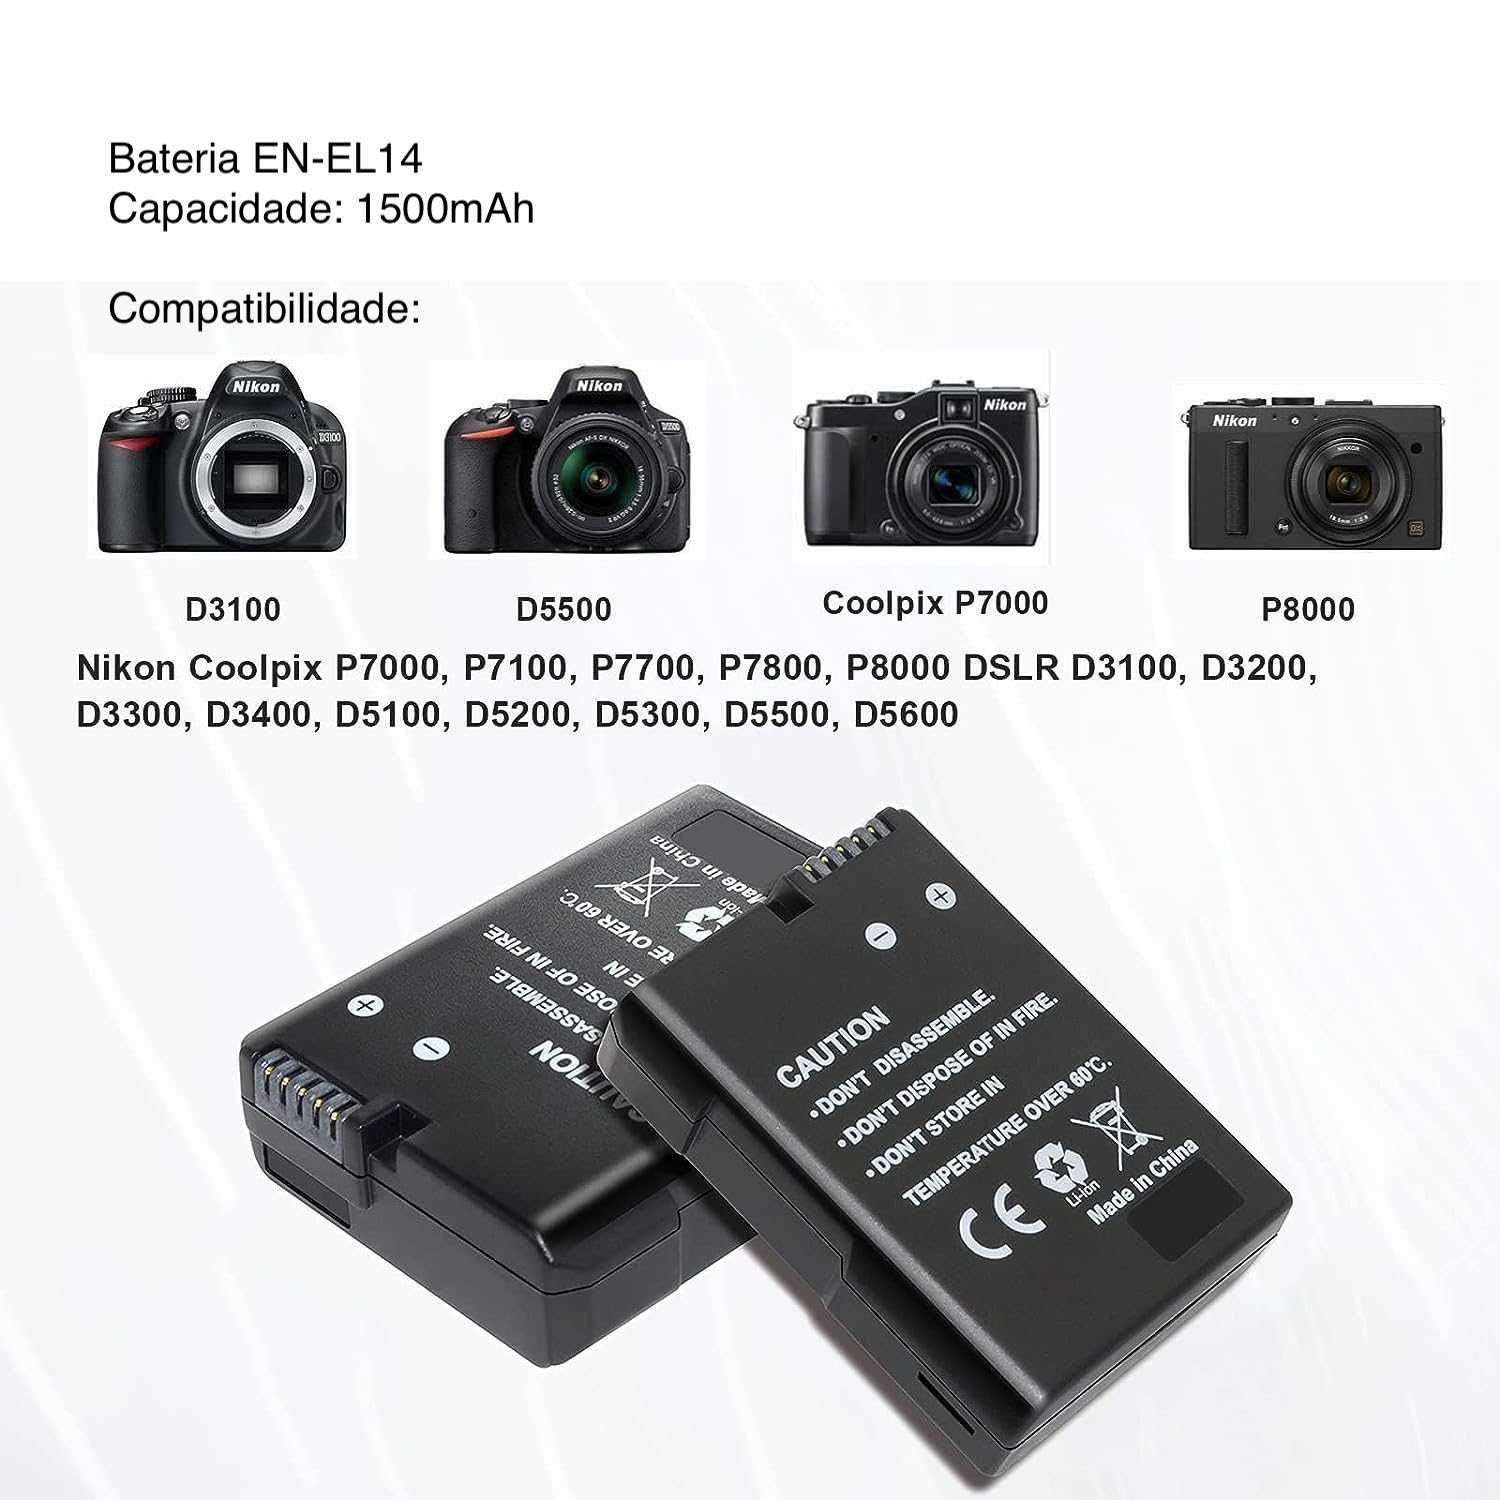 Bateria Nikon EN-EL14 1500mAh para Nikon D3100 D3400 D5100 D5300 NOVA